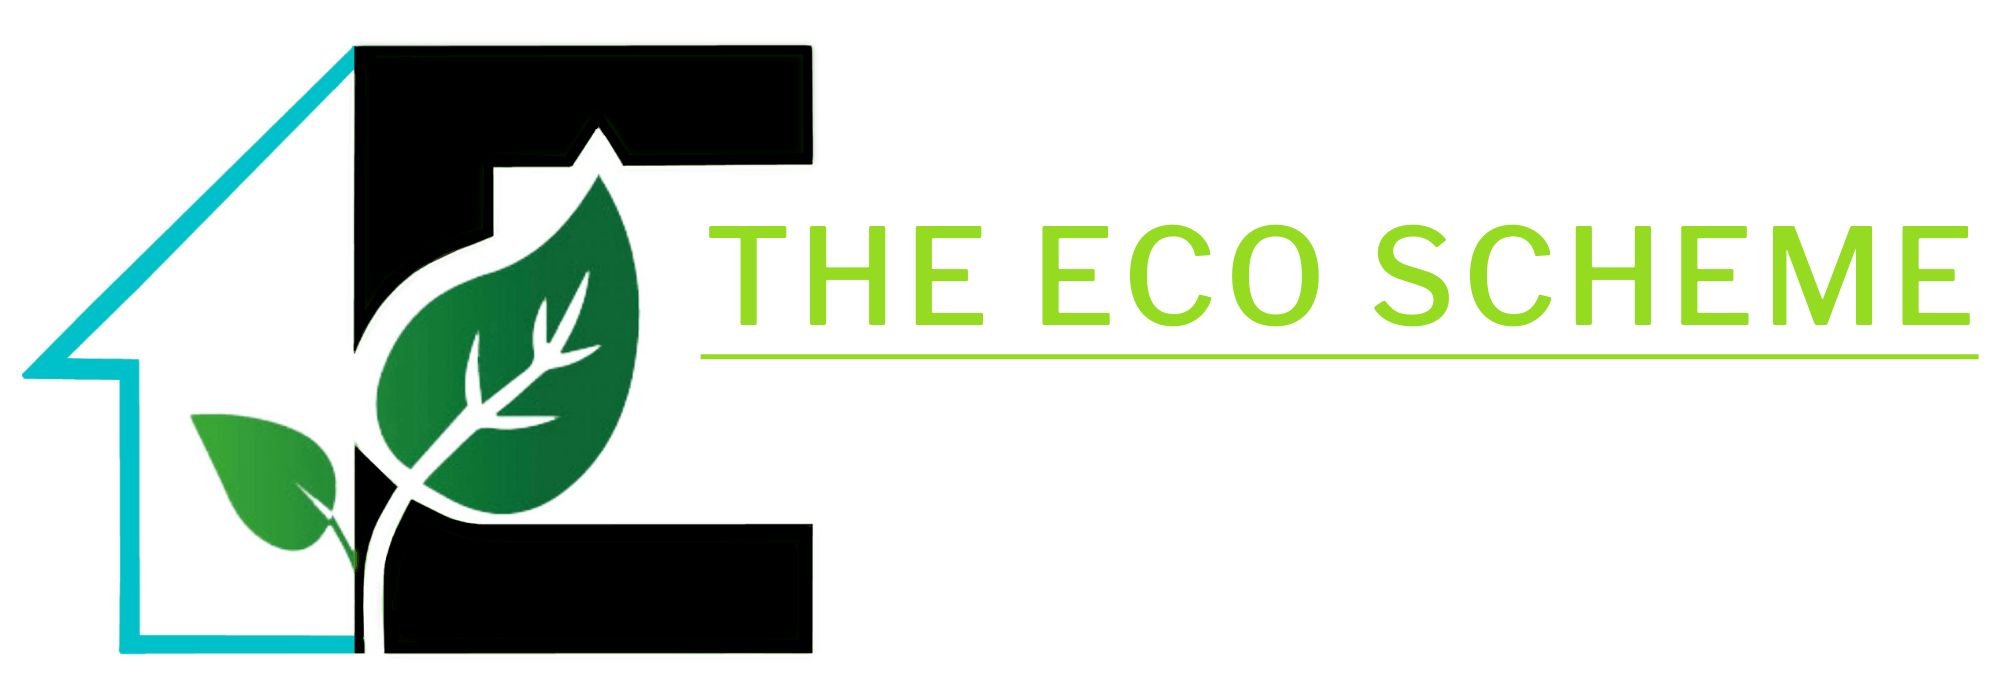 Ecoscheme徽标